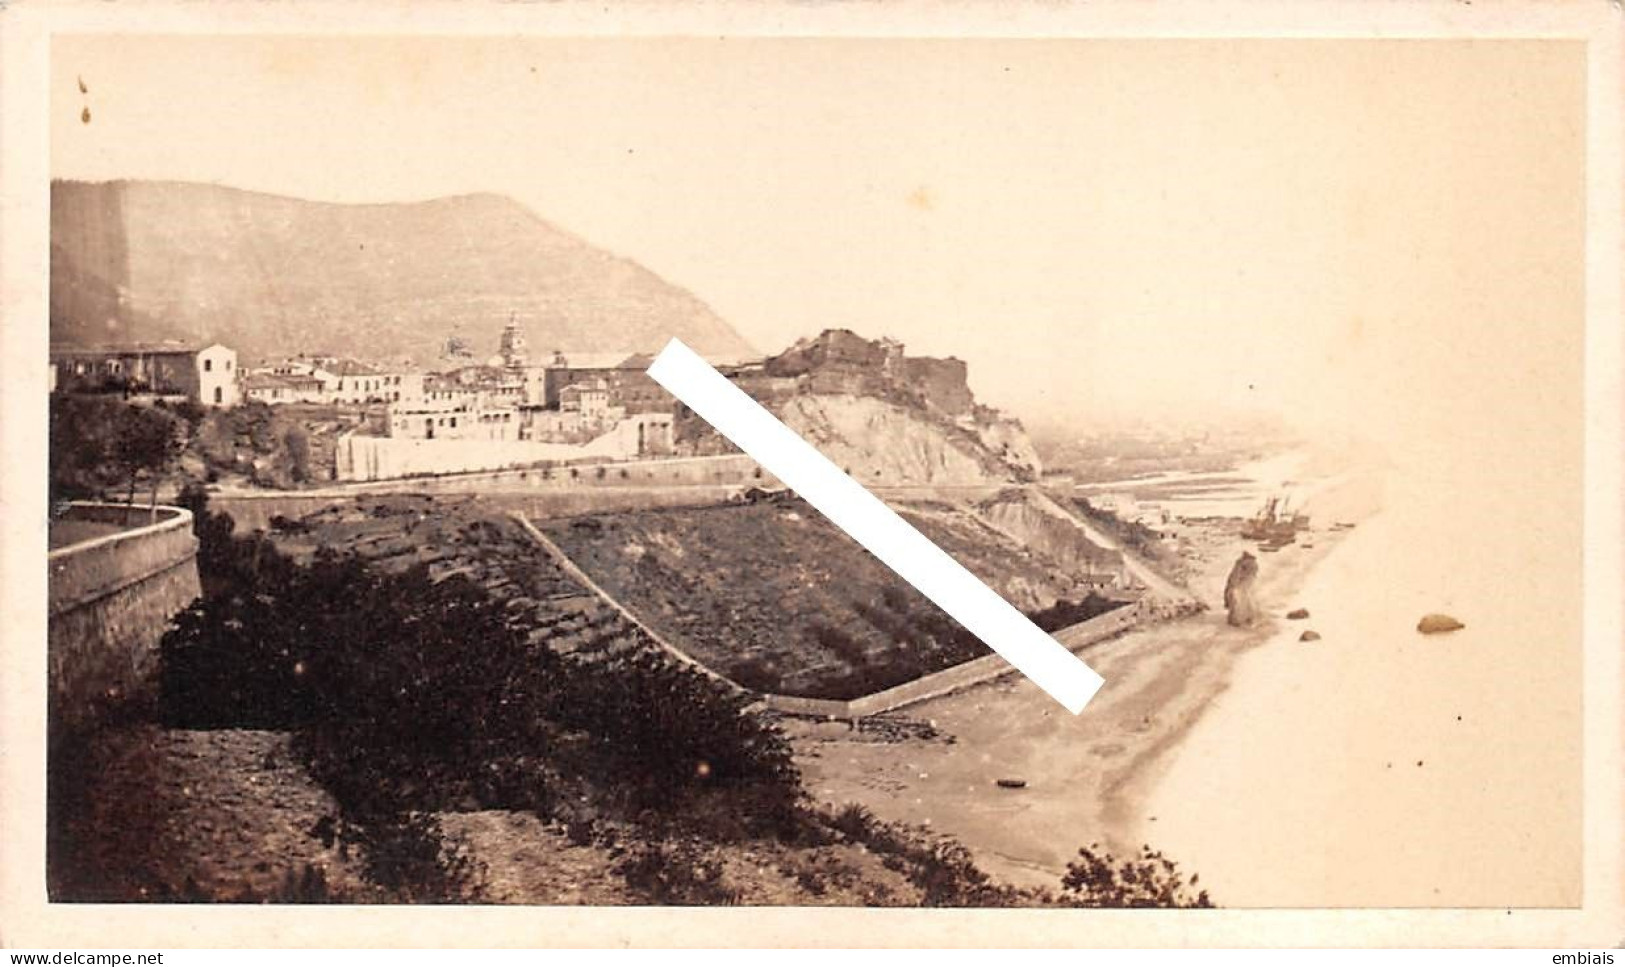 MONACO 1865/70 - Photo Originale CDV La Cité De Monaco, Monté Carlo Par Le Photographe Louis Alphonse DAVANNE - Antiche (ante 1900)